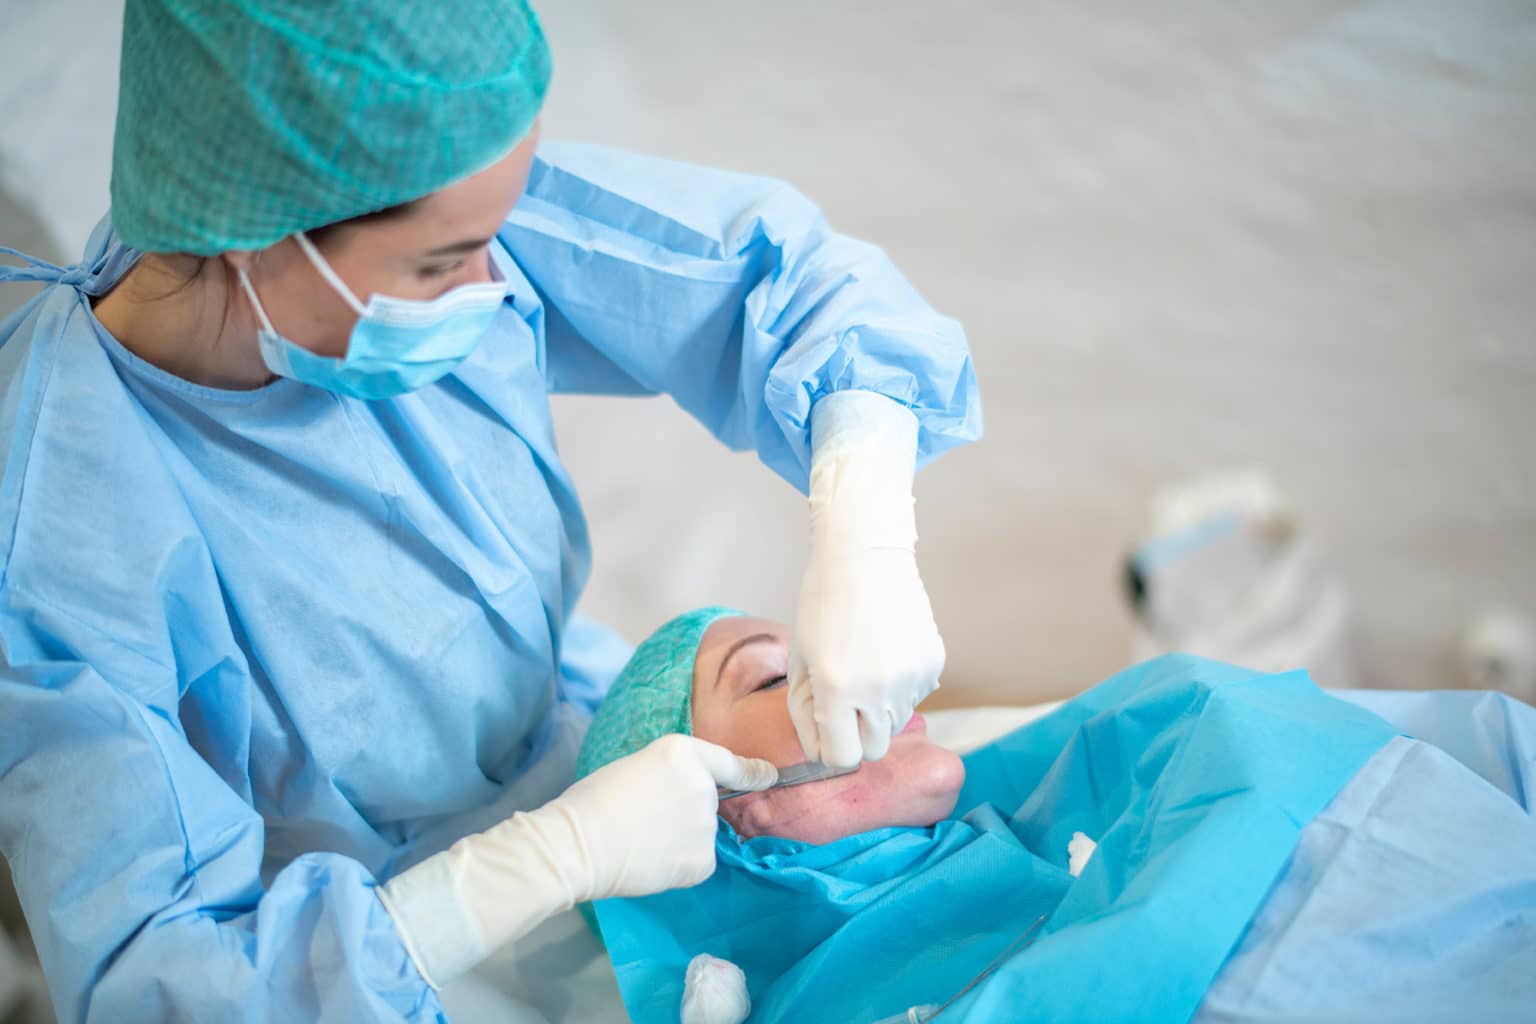 Ett trådlyft utförs av en behandlare på en patient hos Plastikkirurgen Stockholm